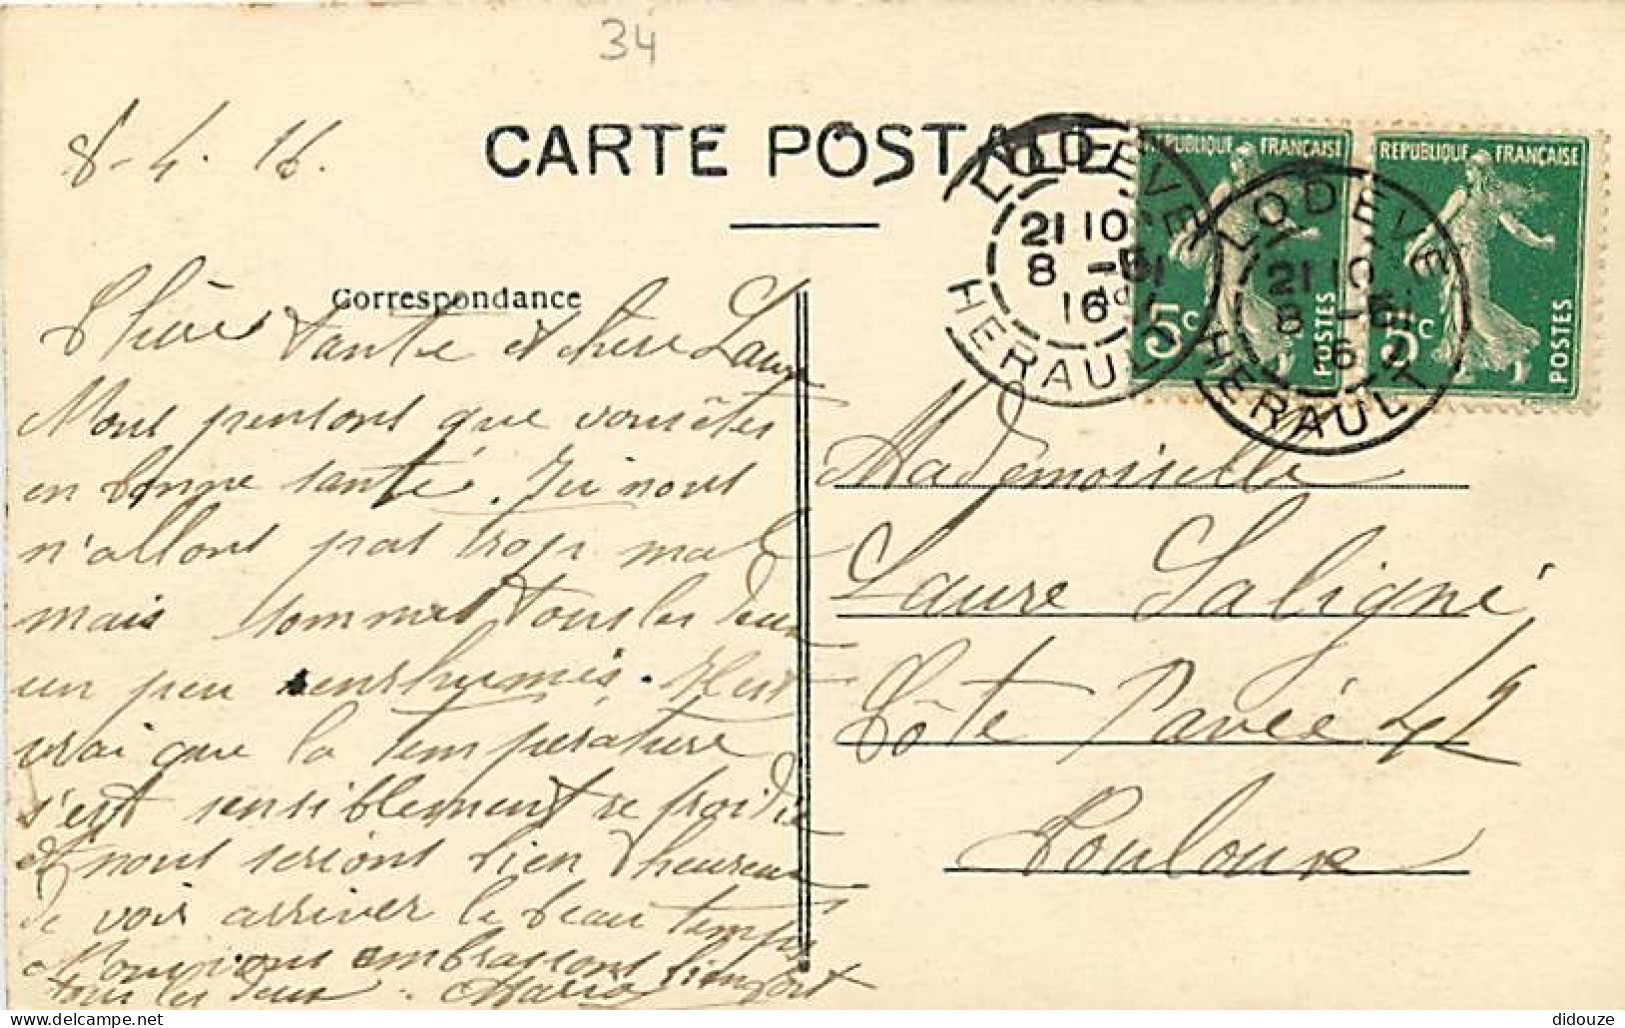 34 - Lodève - La Bouquerie - Correspondance - Oblitération Ronde De 1916 - CPA - Voir Scans Recto-Verso - Lodeve